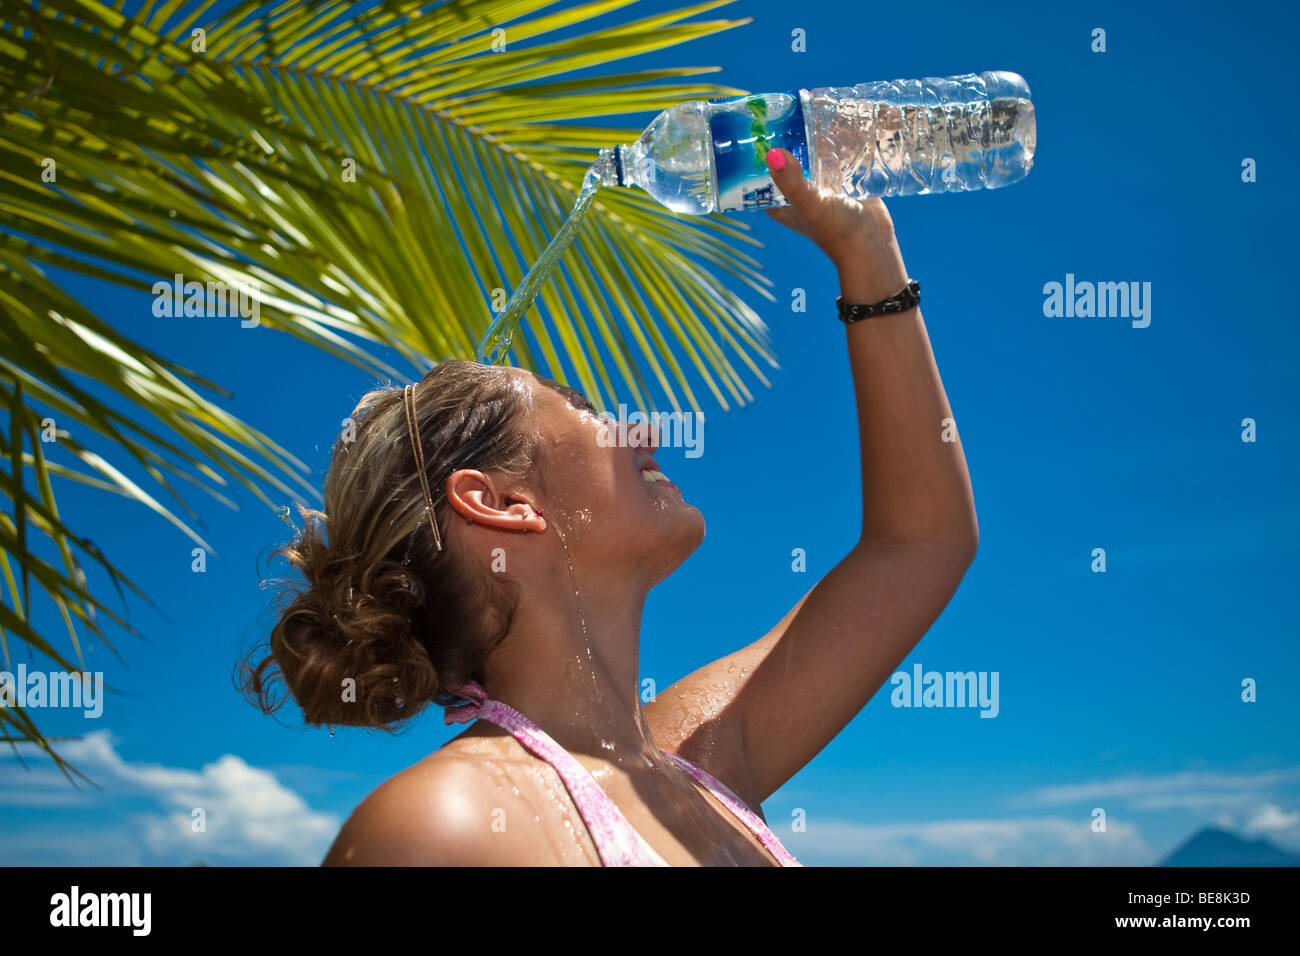 Giovane donna sulla spiaggia versando acqua da una bottiglia di acqua sopra la testa, Indonesia, sud-est asiatico Foto Stock